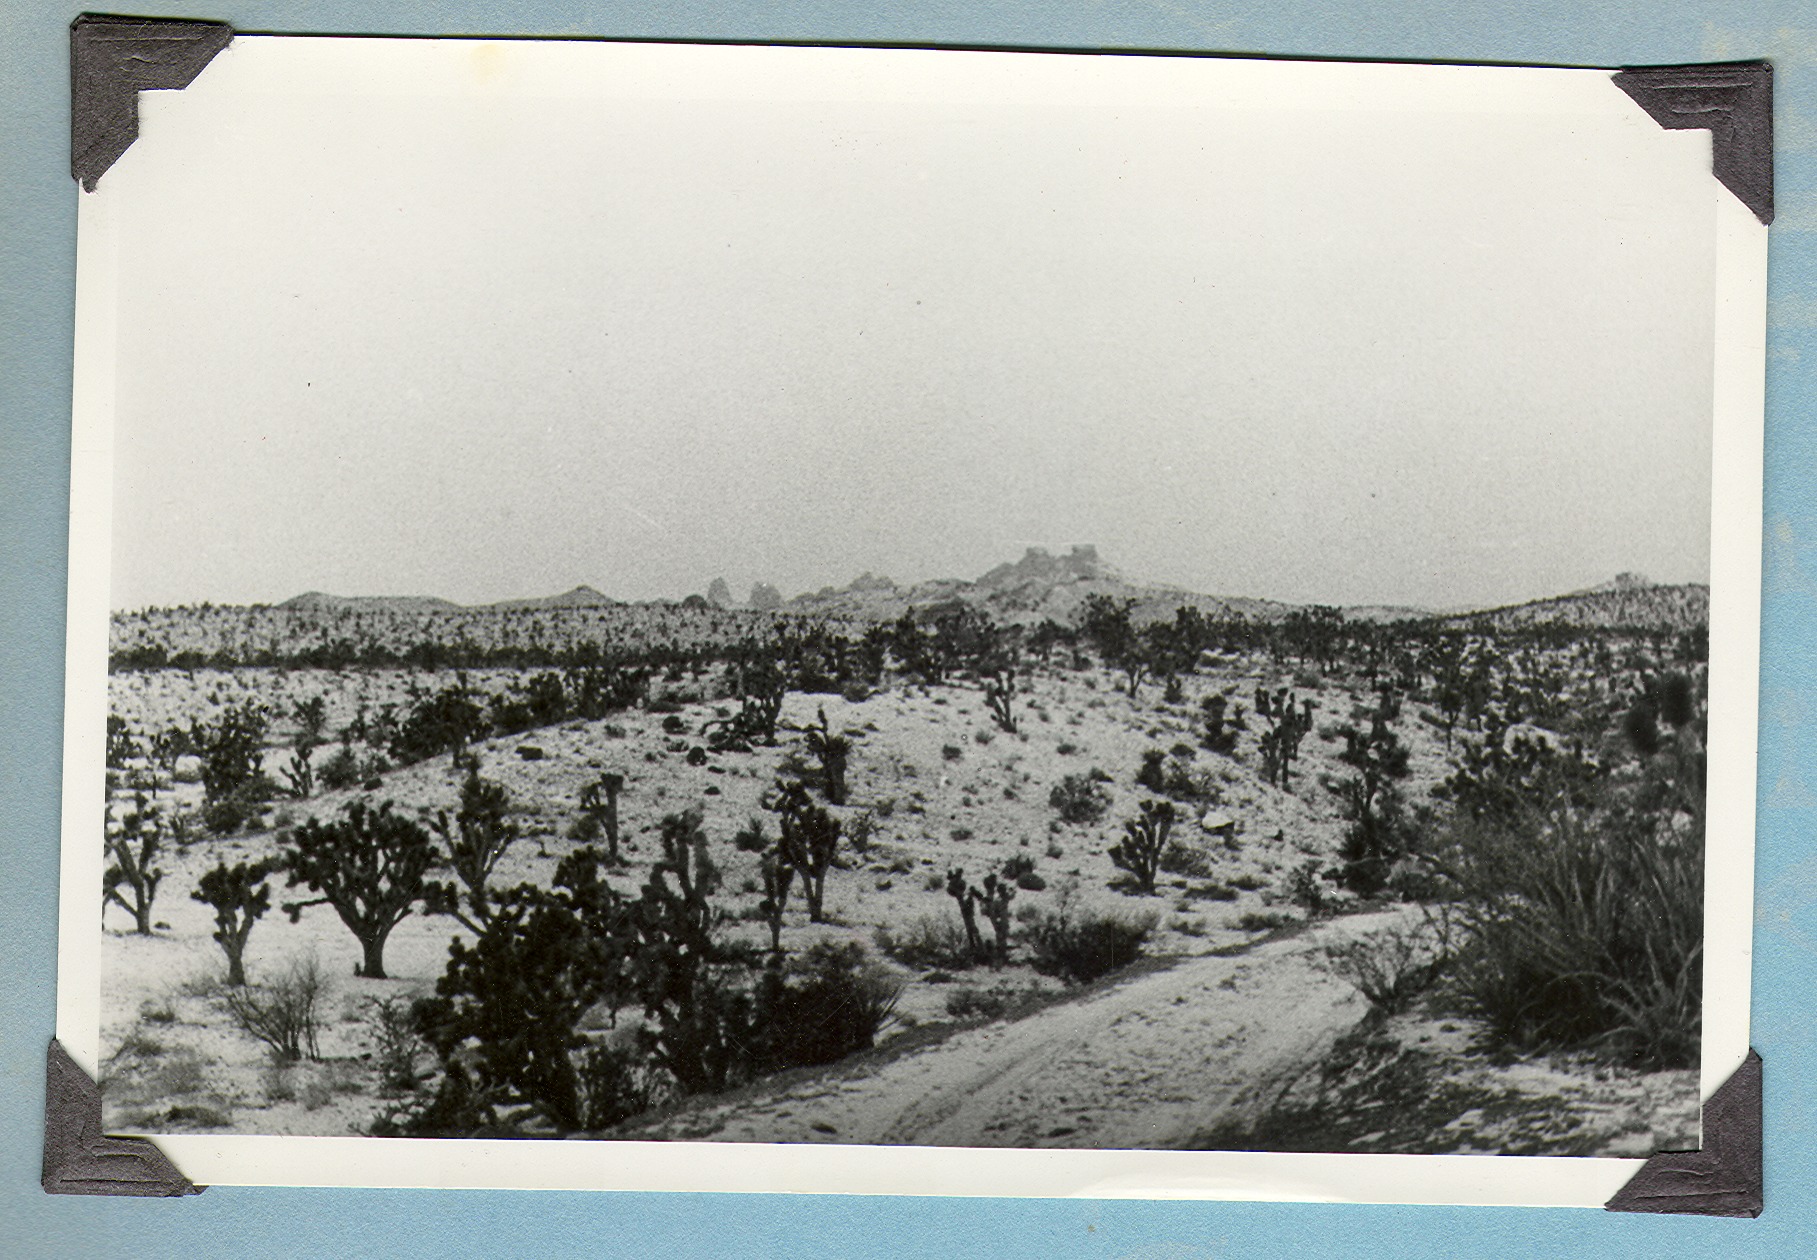 Desert snow scene in the Mojave Desert: photographic print